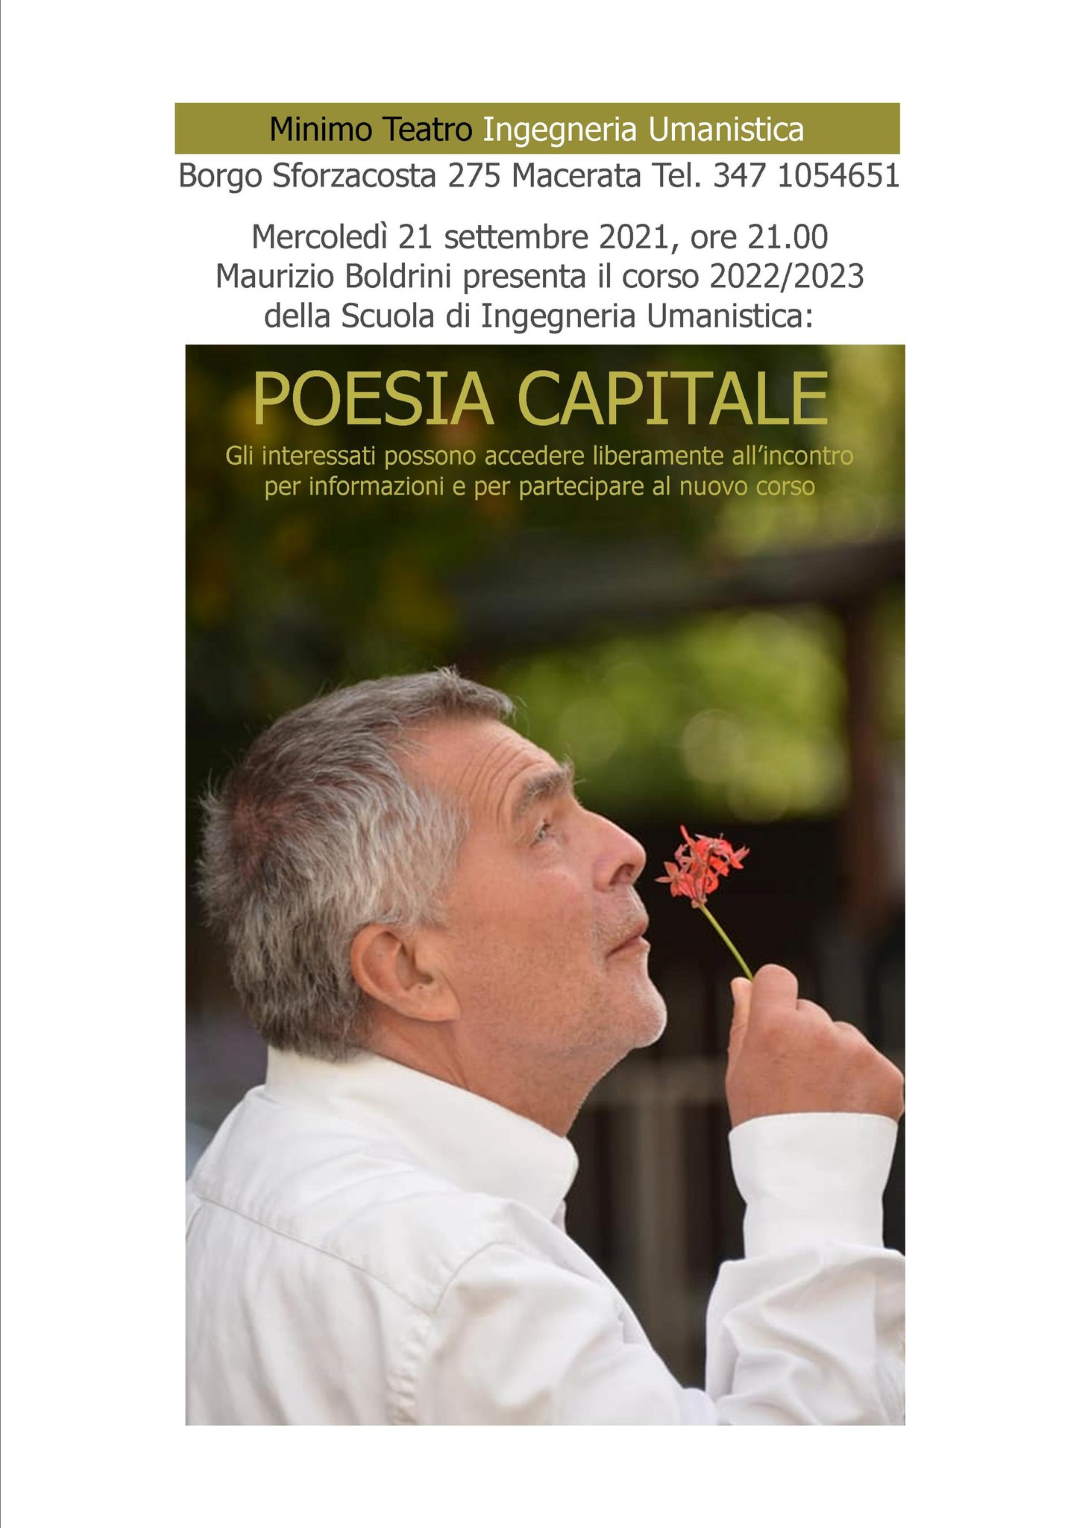 Poesia Capitale, la parola a Maurizio Boldrini